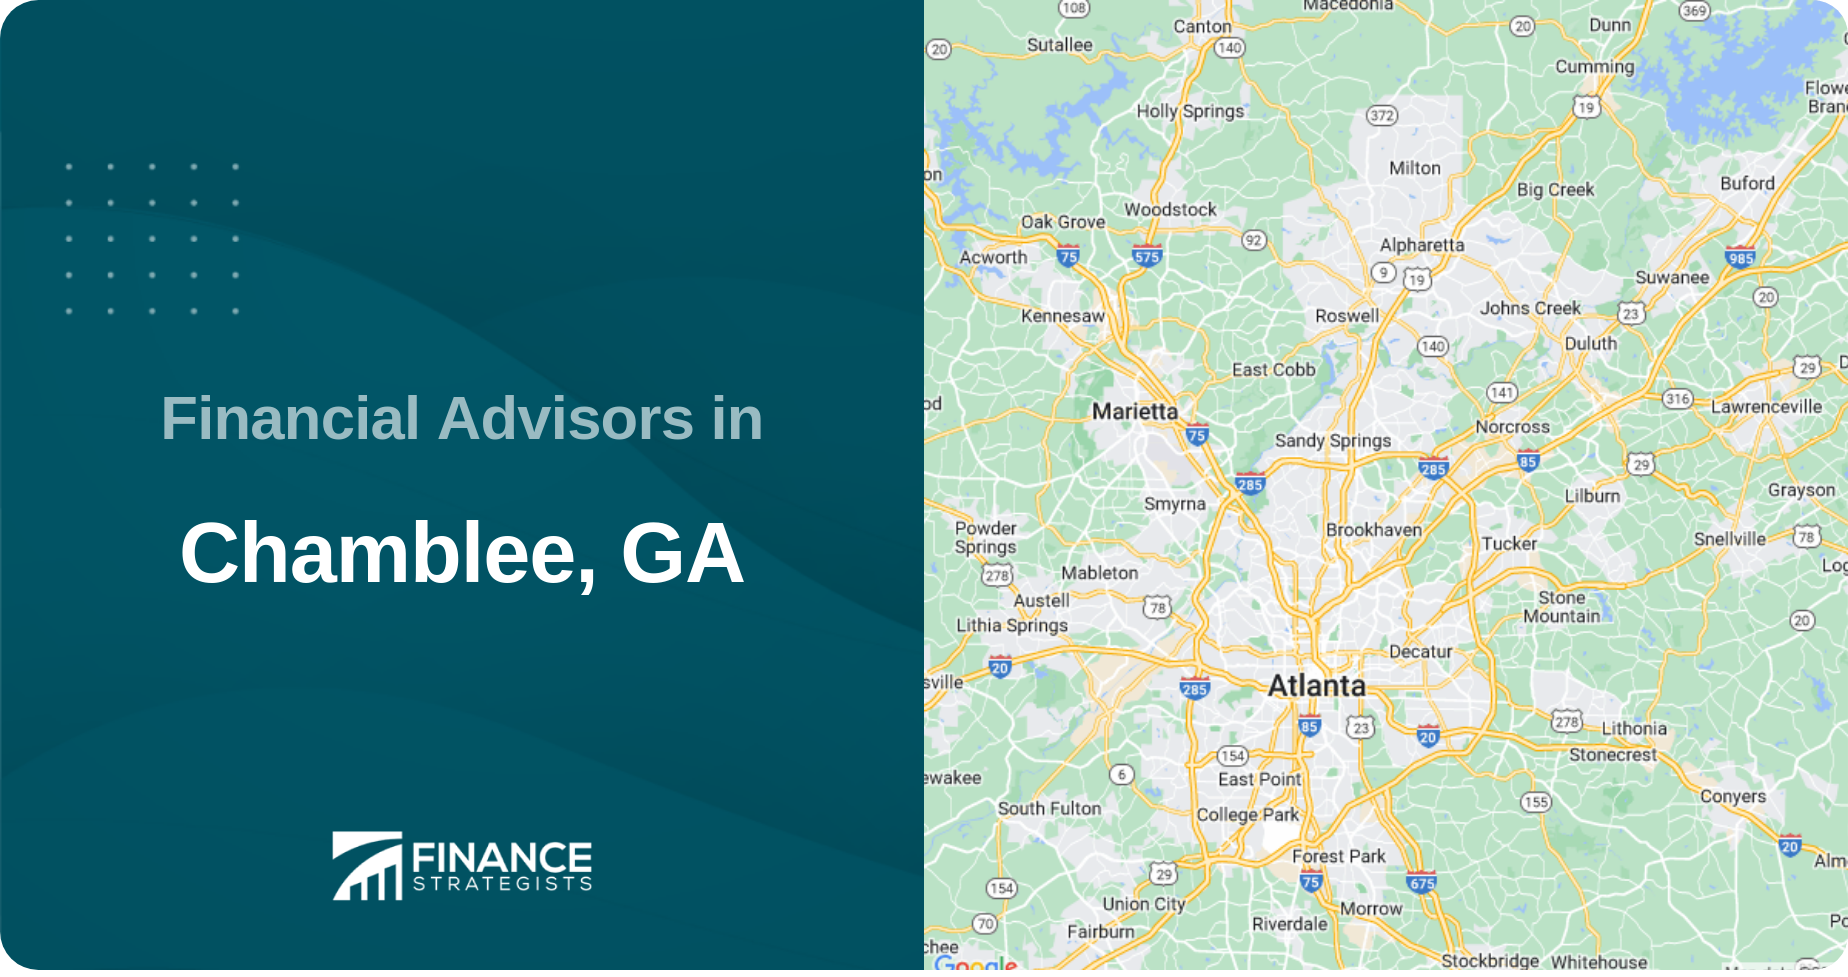 Financial Advisors in Chamblee, GA